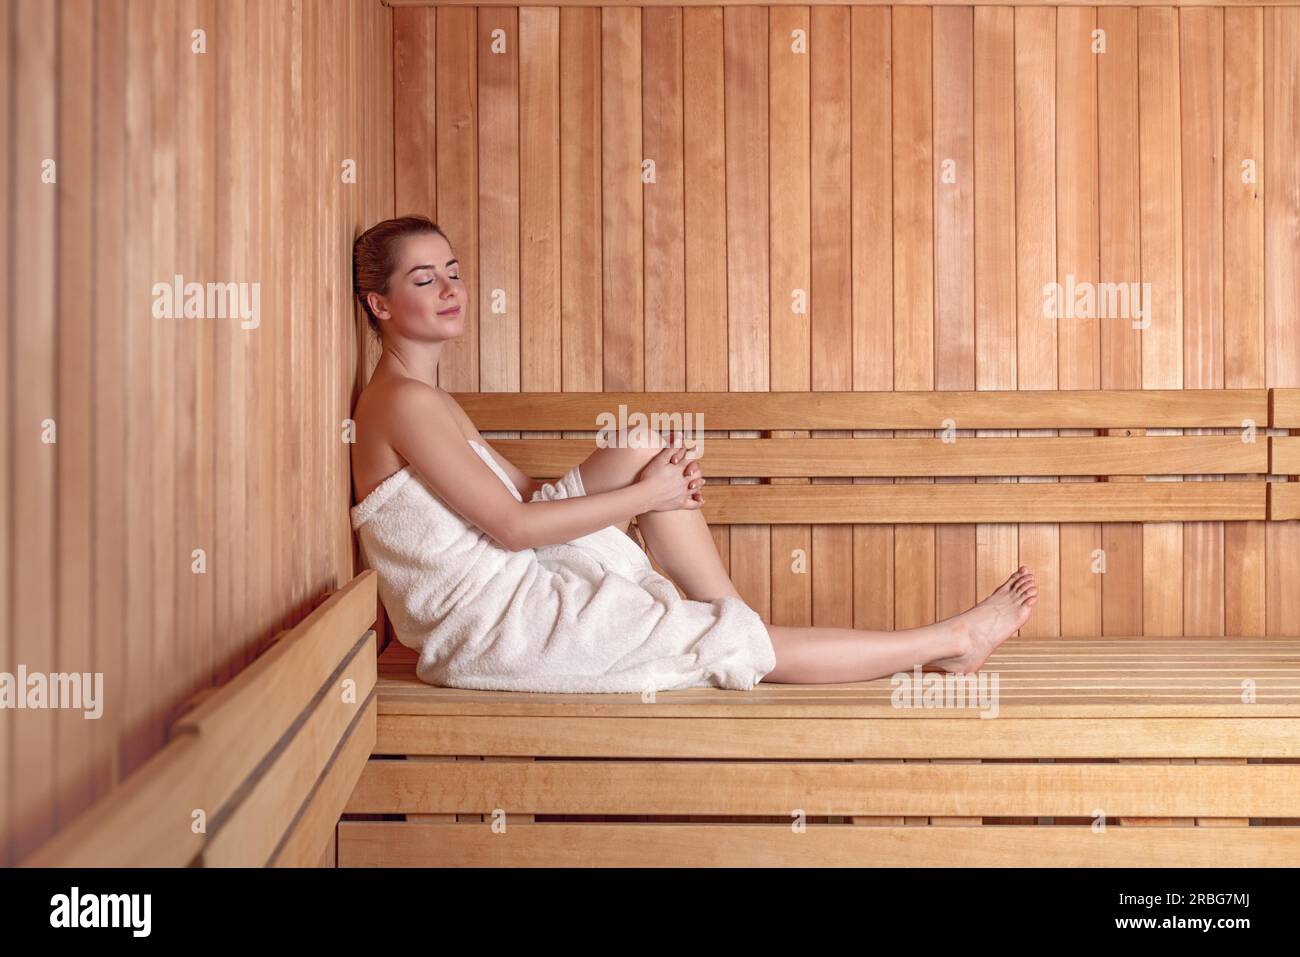 Side view full length portrait of young woman smiling sitting on bench in sauna en bois canapé enveloppé dans une serviette blanche, avec des cheveux en chignon donut Banque D'Images